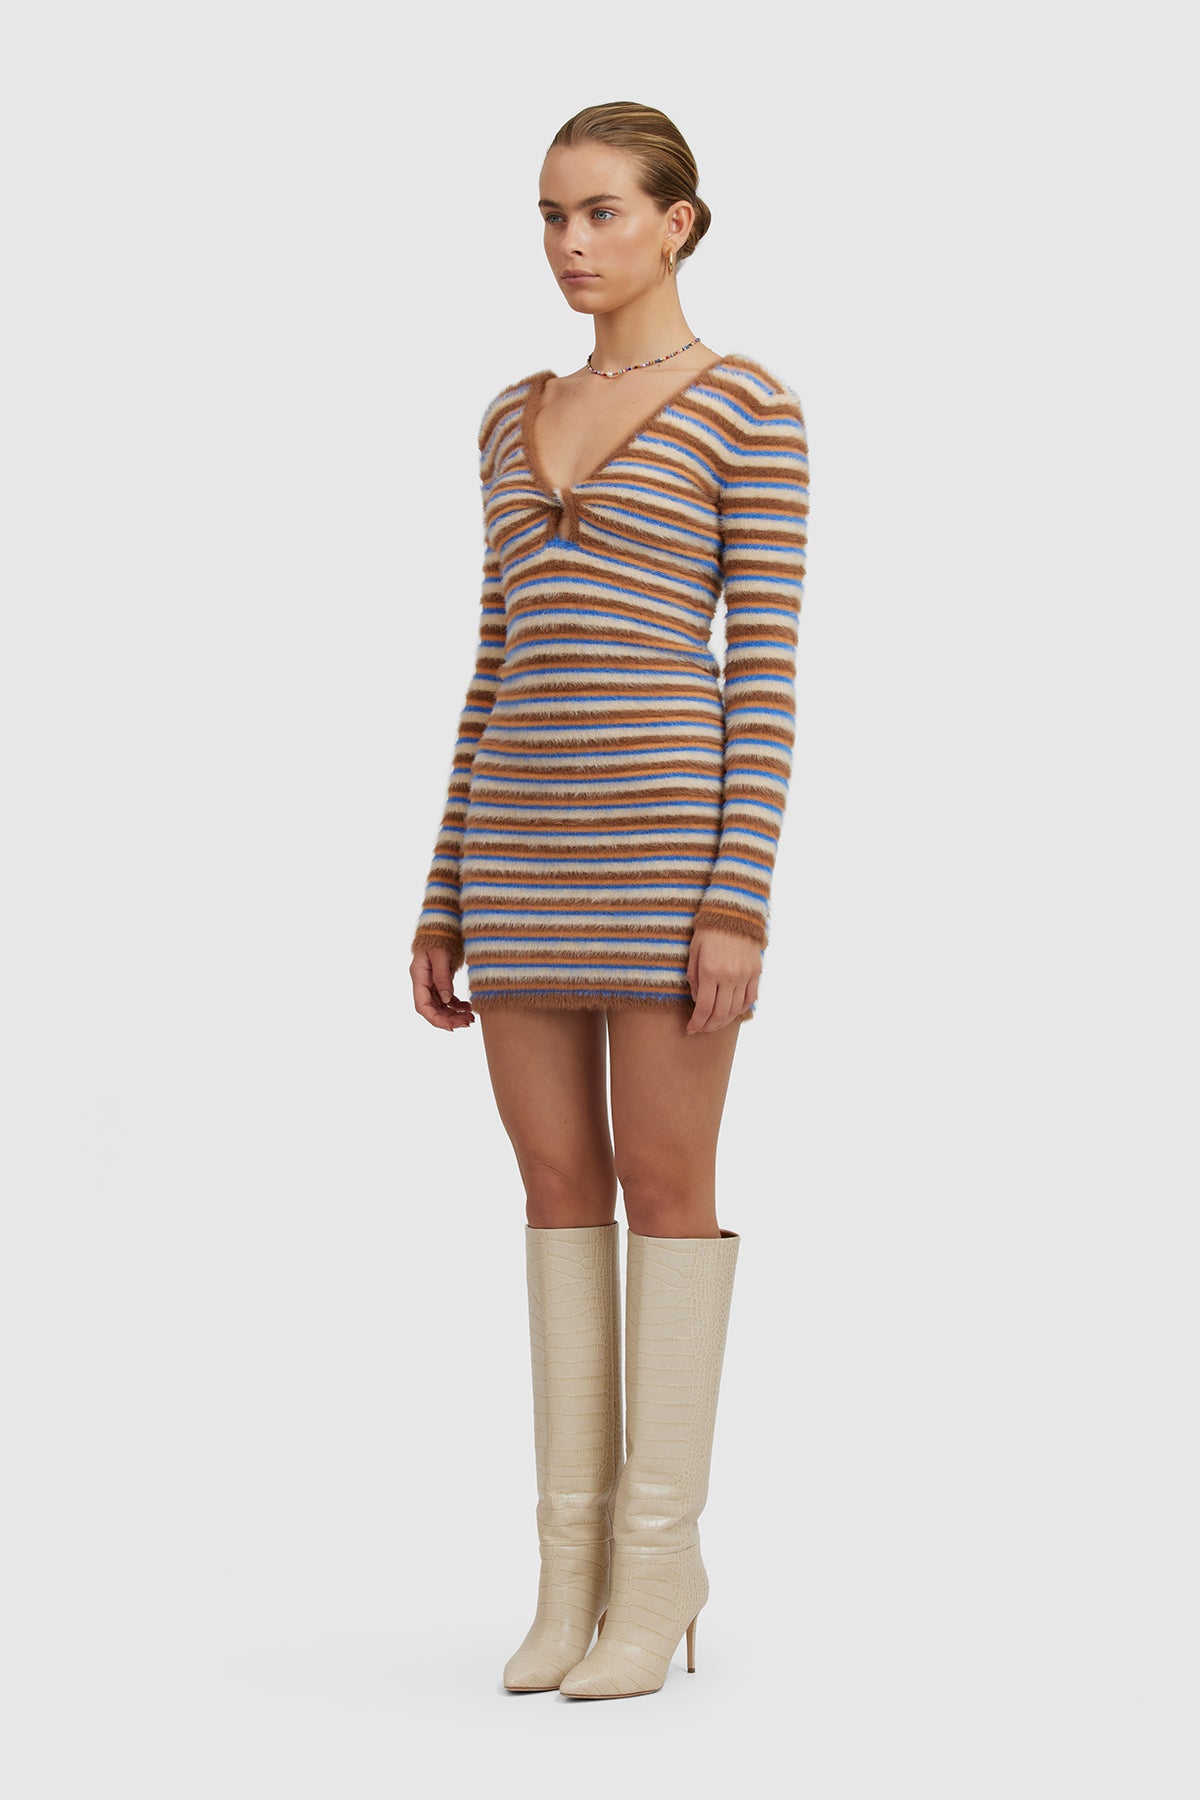 Estie Knit Dress - Coco Stripe